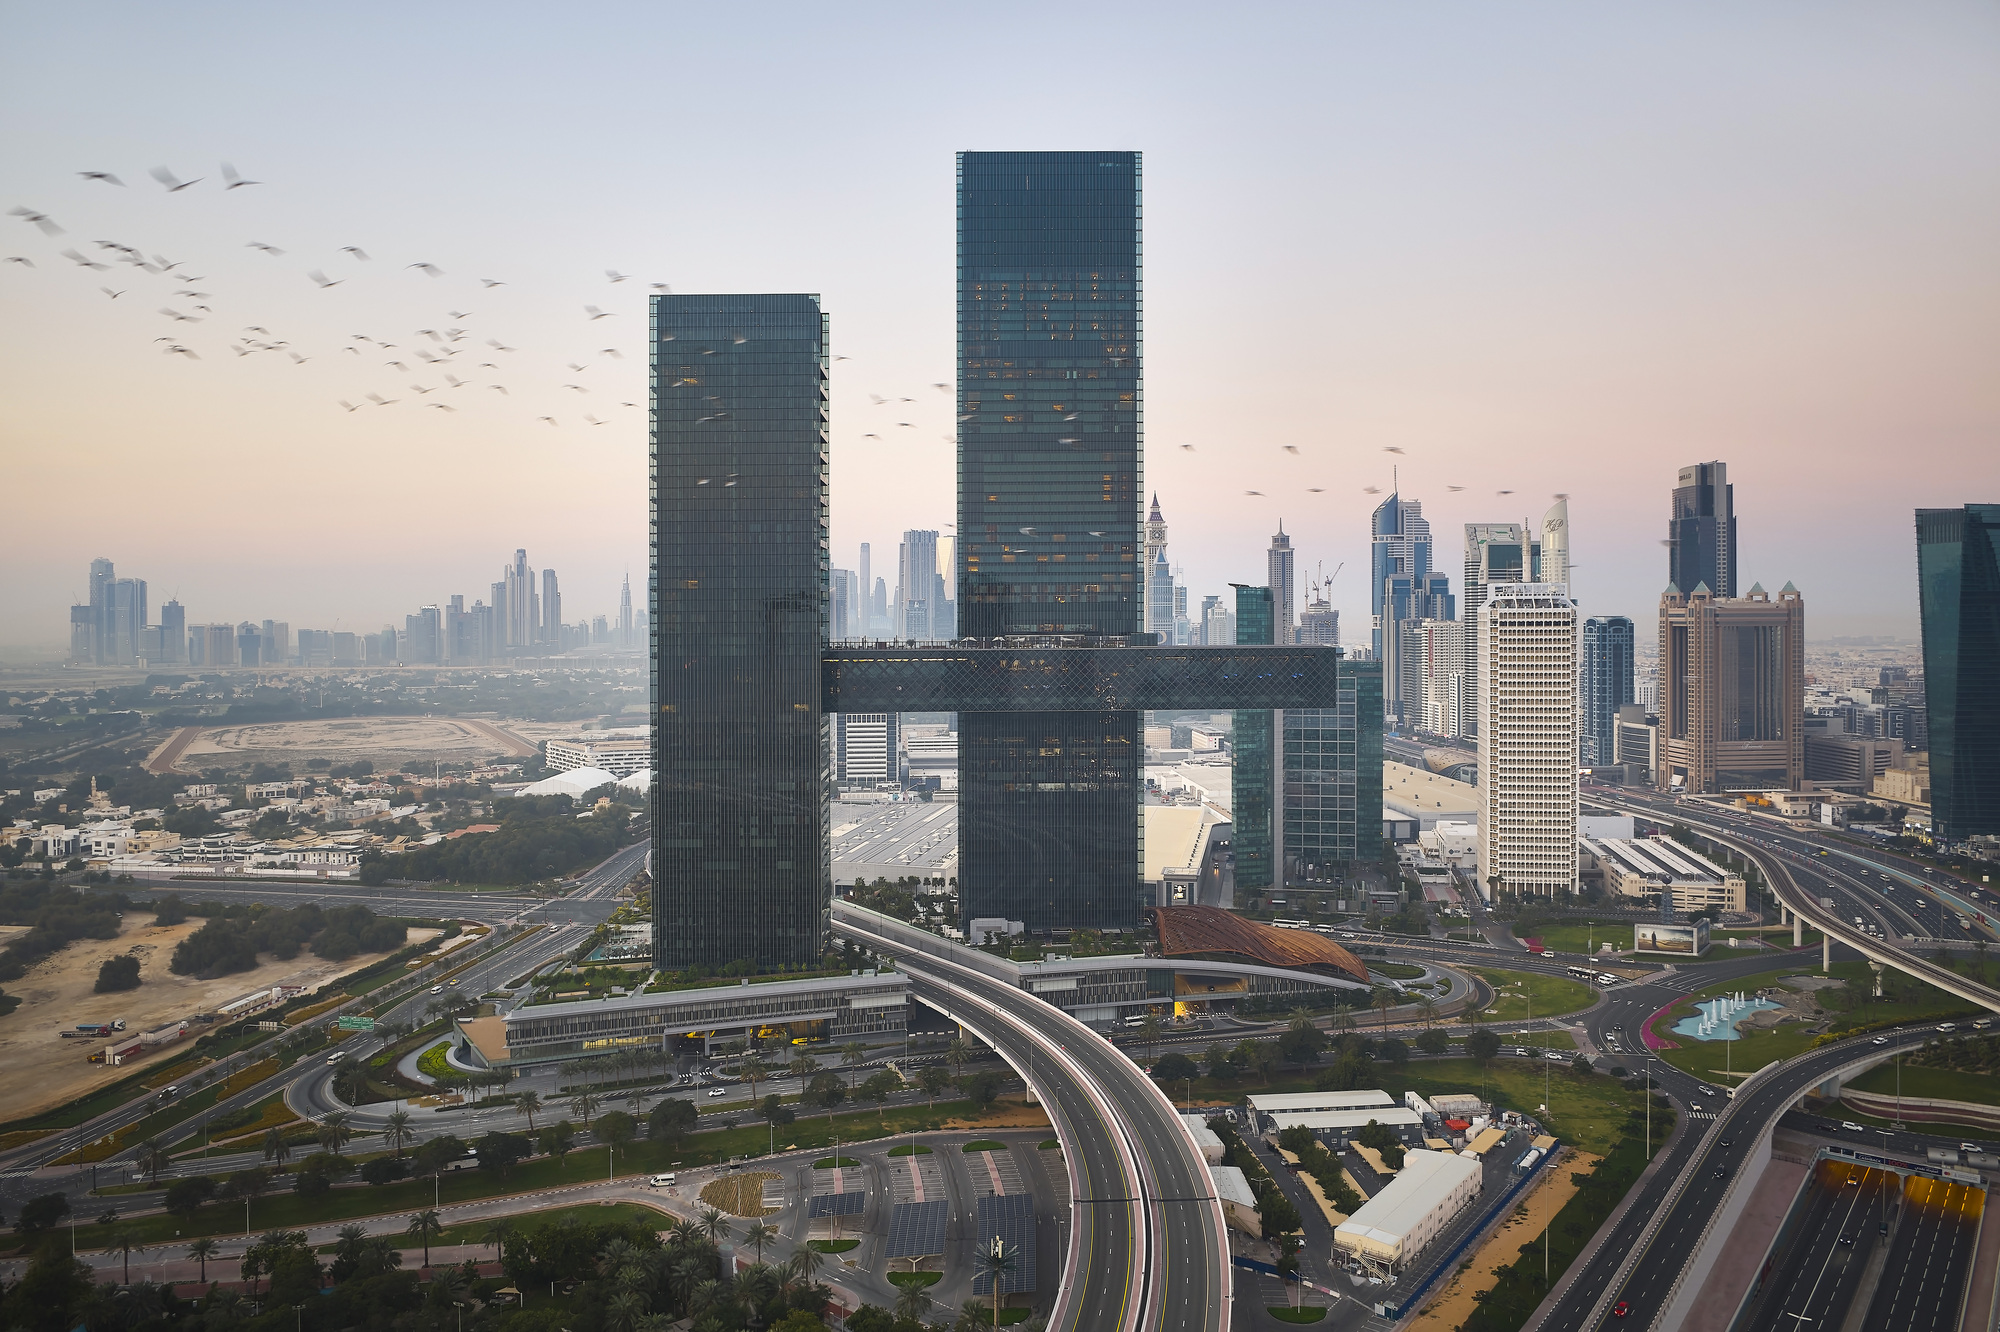 Nikken Sekkei завершил строительство самого длинного в мире консольного небоскреба в Дубае